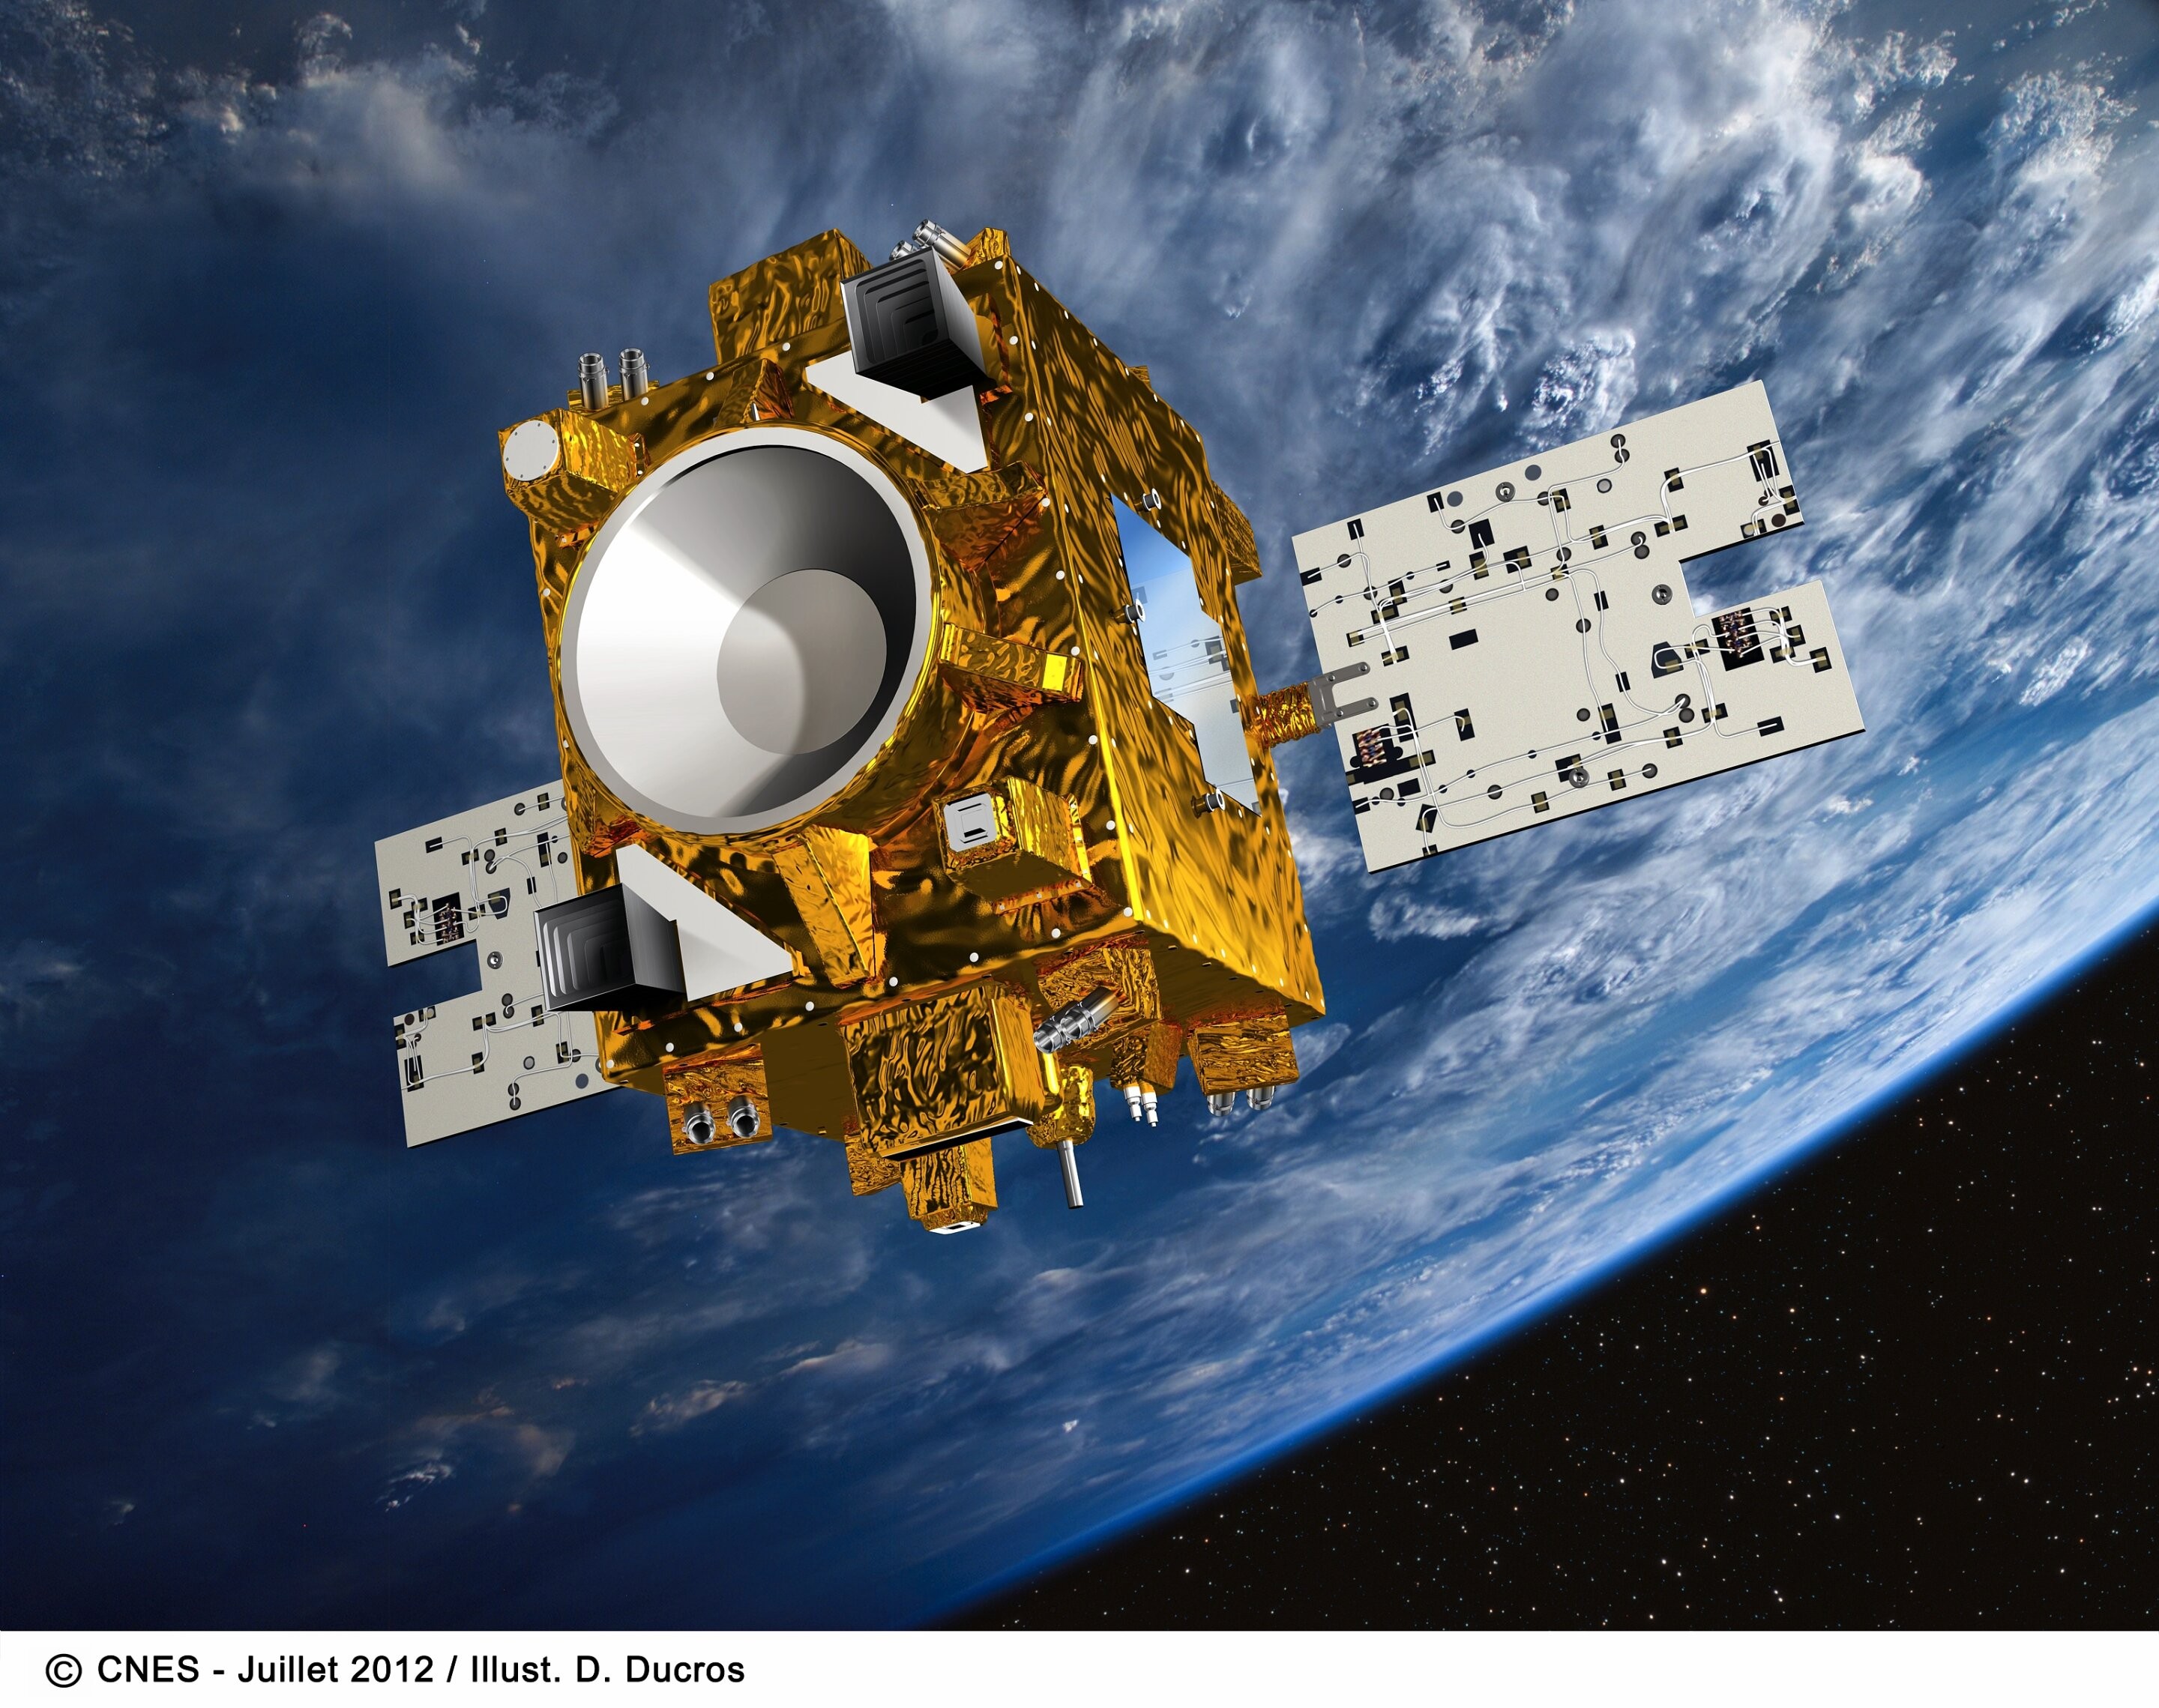 Missão testou o Princípio de Equivalência Fraca da Relatividade Geral medindo as acelerações de objetos em queda livre em um satélite na órbita terrestre (Foto: CNES 2015)